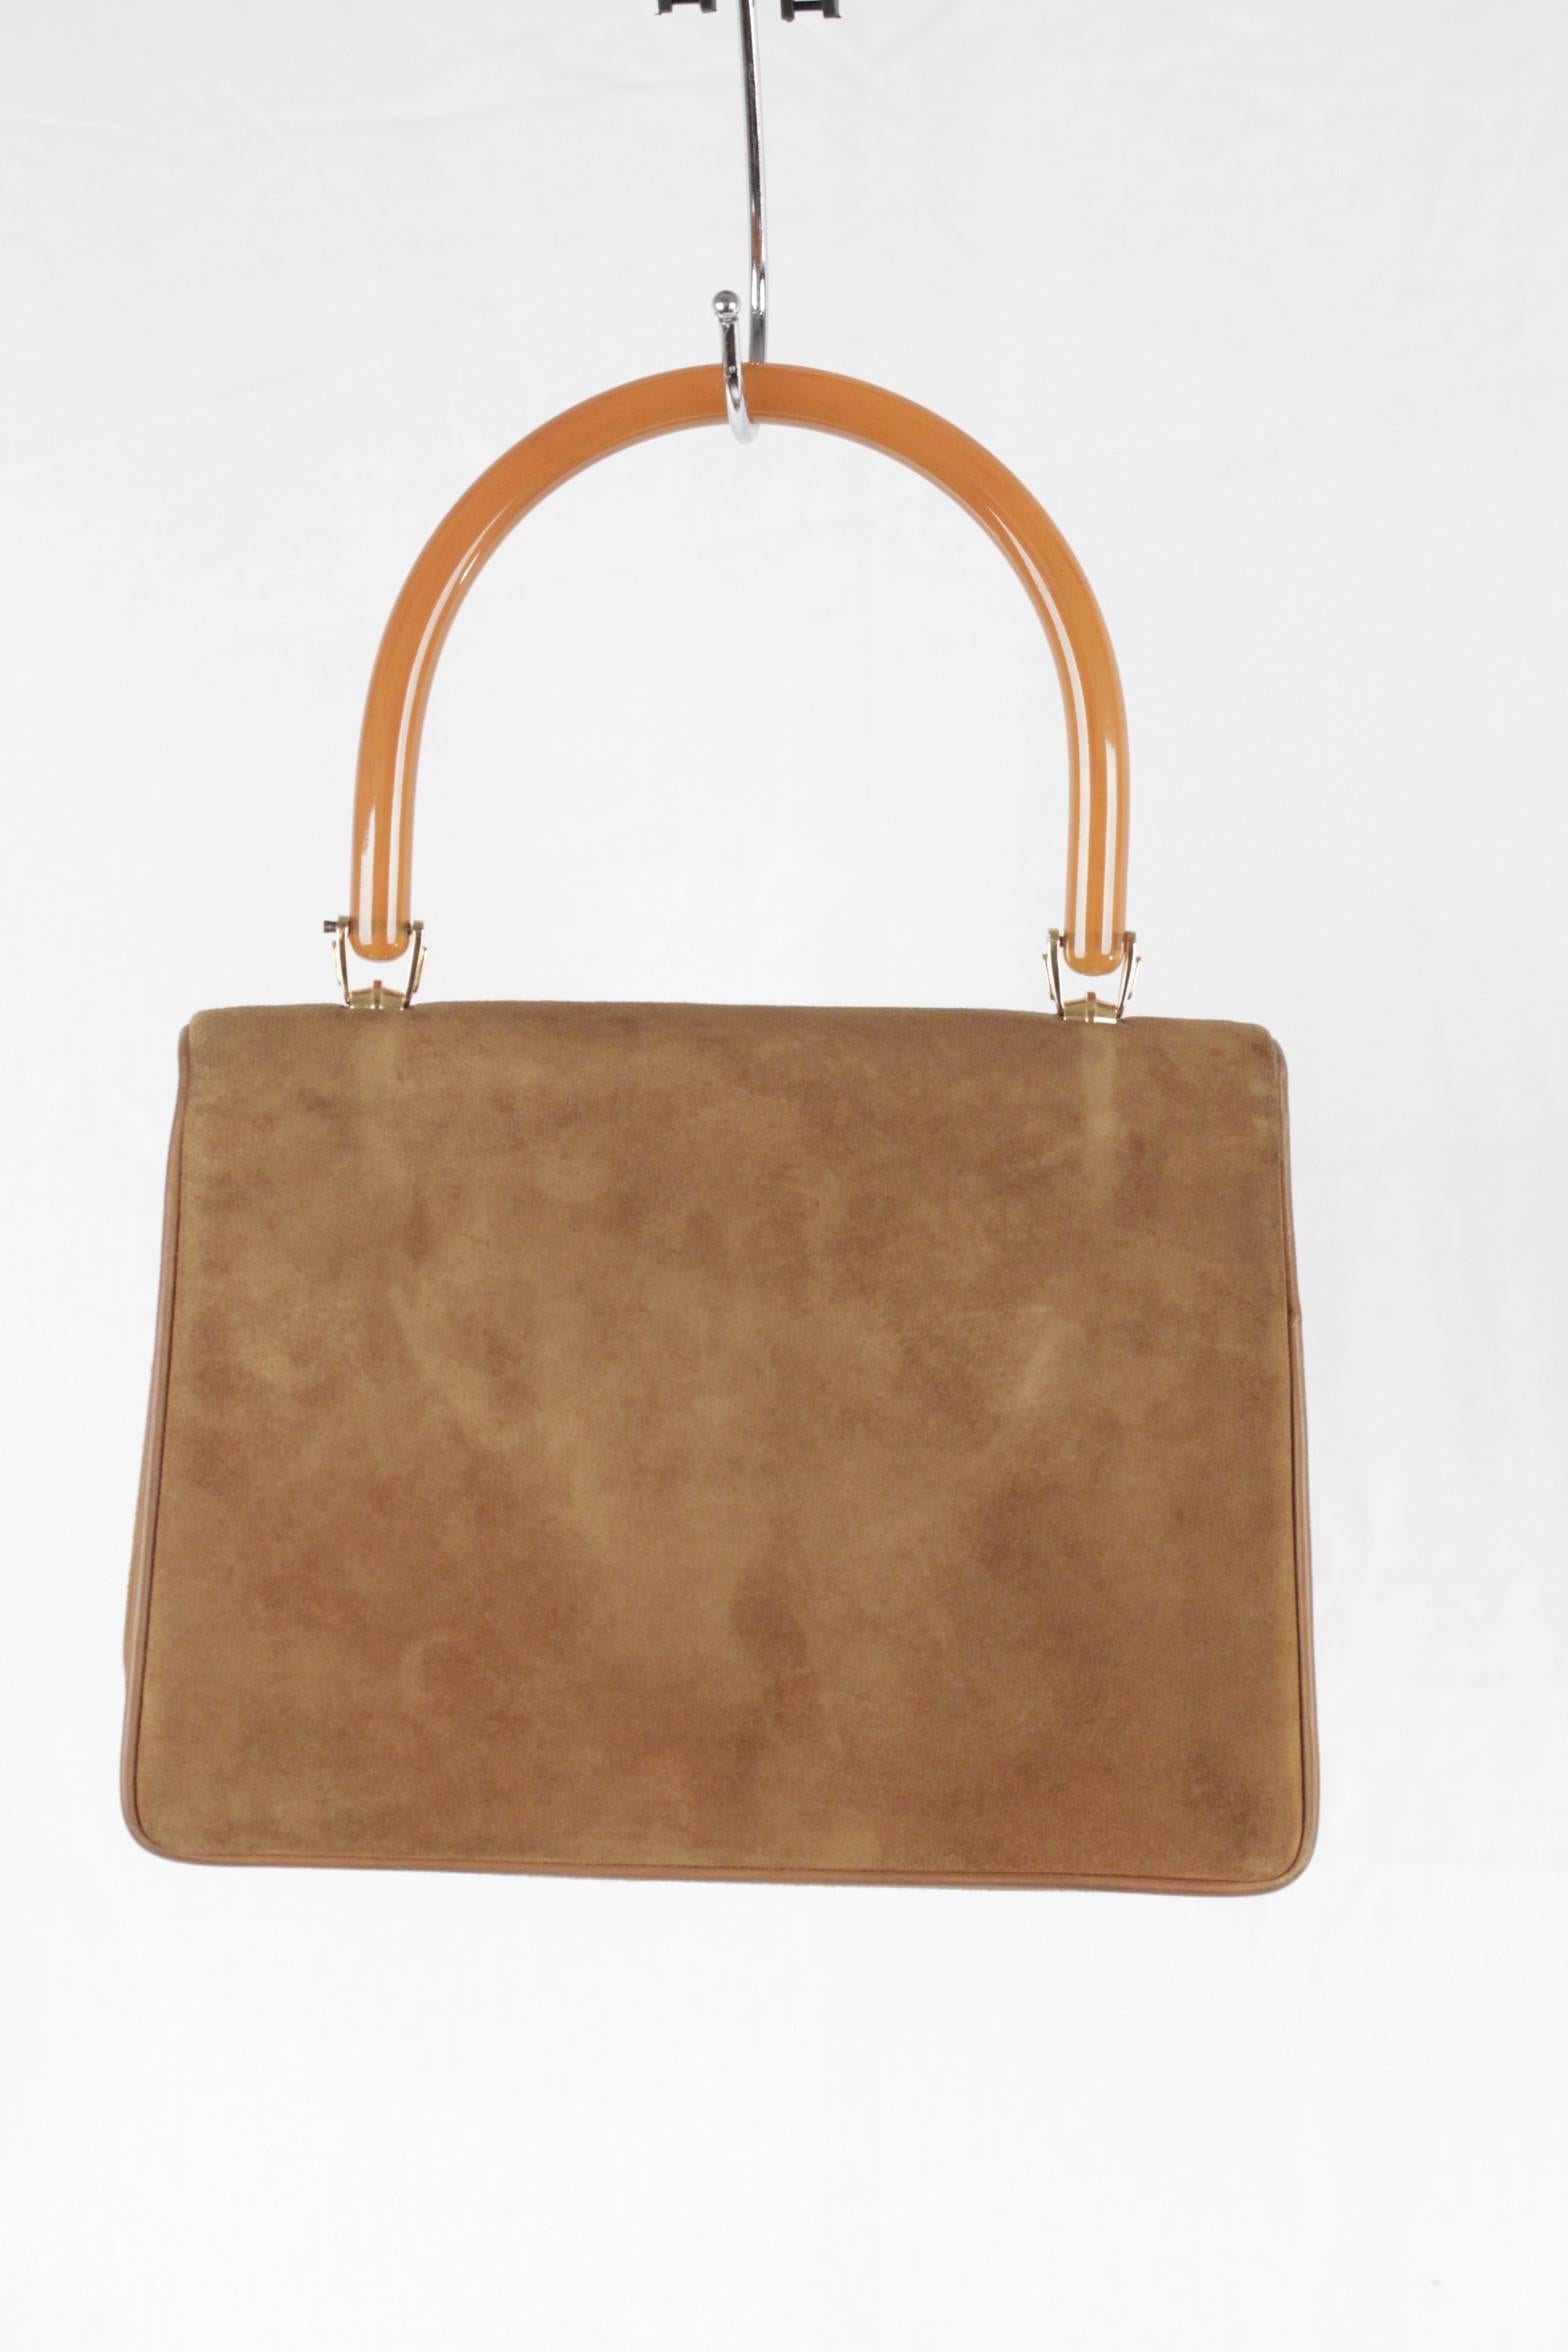 light brown handbag